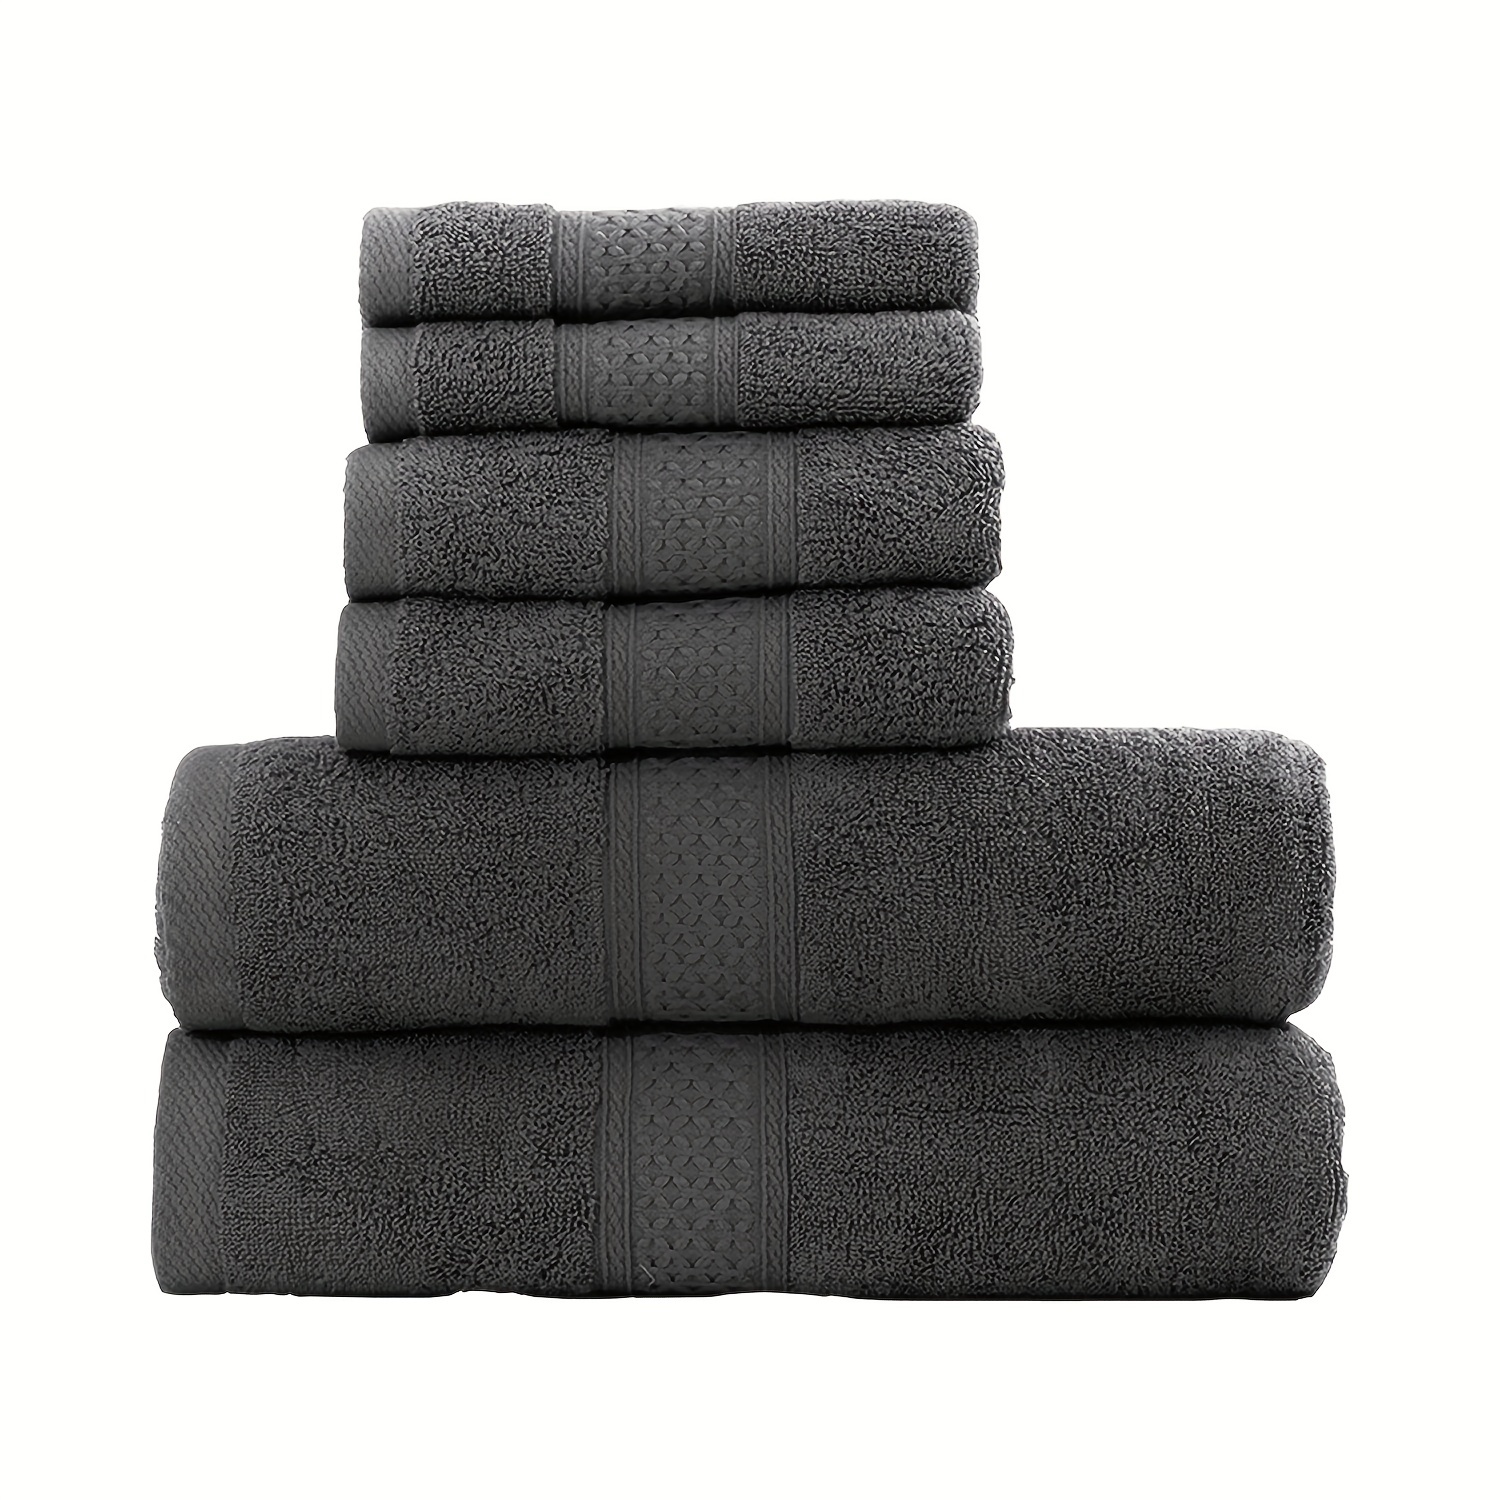 6pcs Towel Set Including 2 Bath Towels, 2 Hand Towels, 2